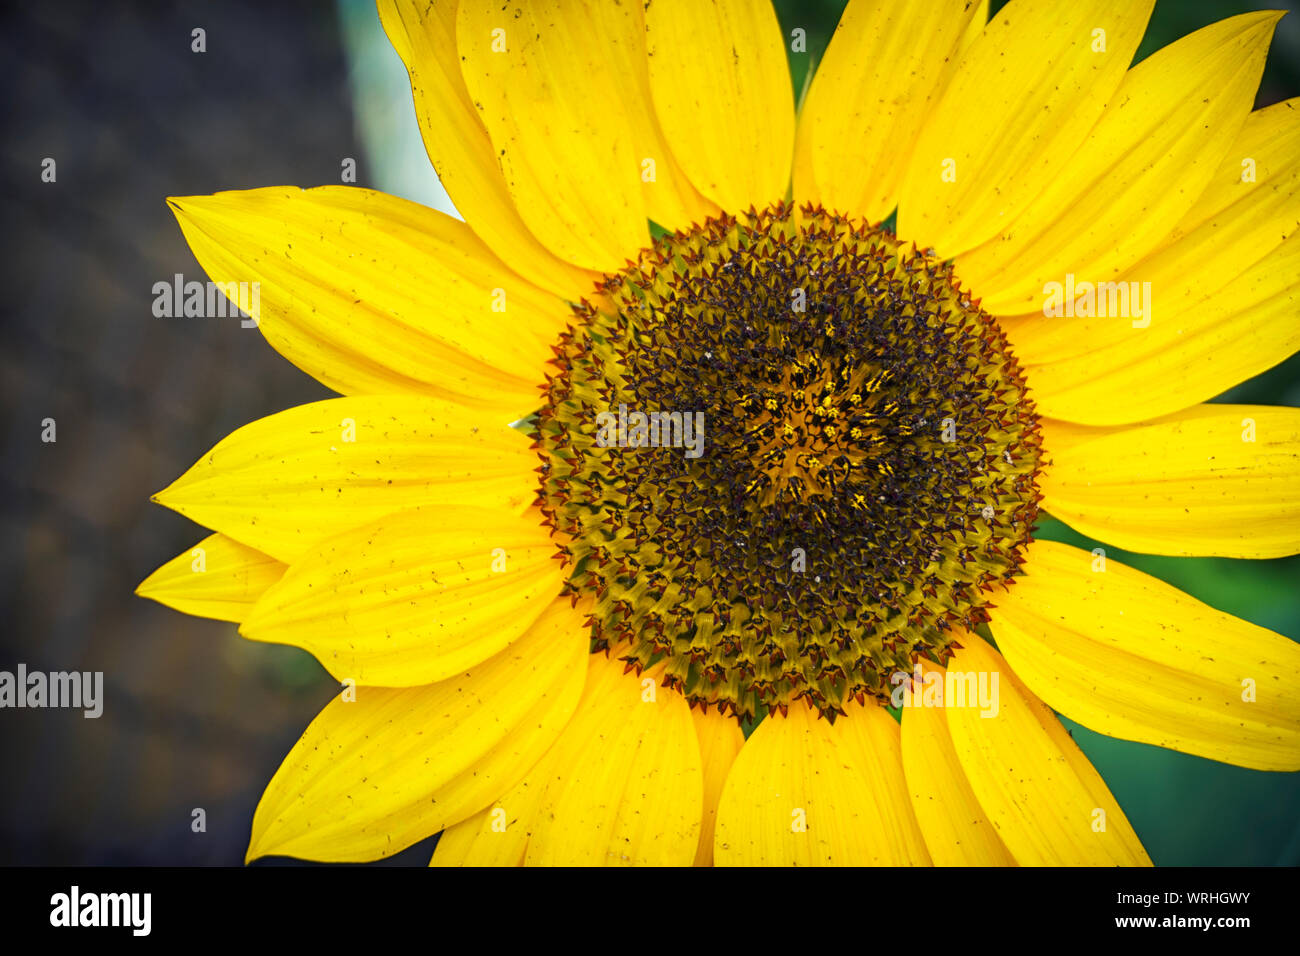 Un gros plan d'un jeune d'un jaune vif sur un champ de tournesol tournesol dans une chaude journée ensoleillée, l'arrière-plan est flou. Banque D'Images